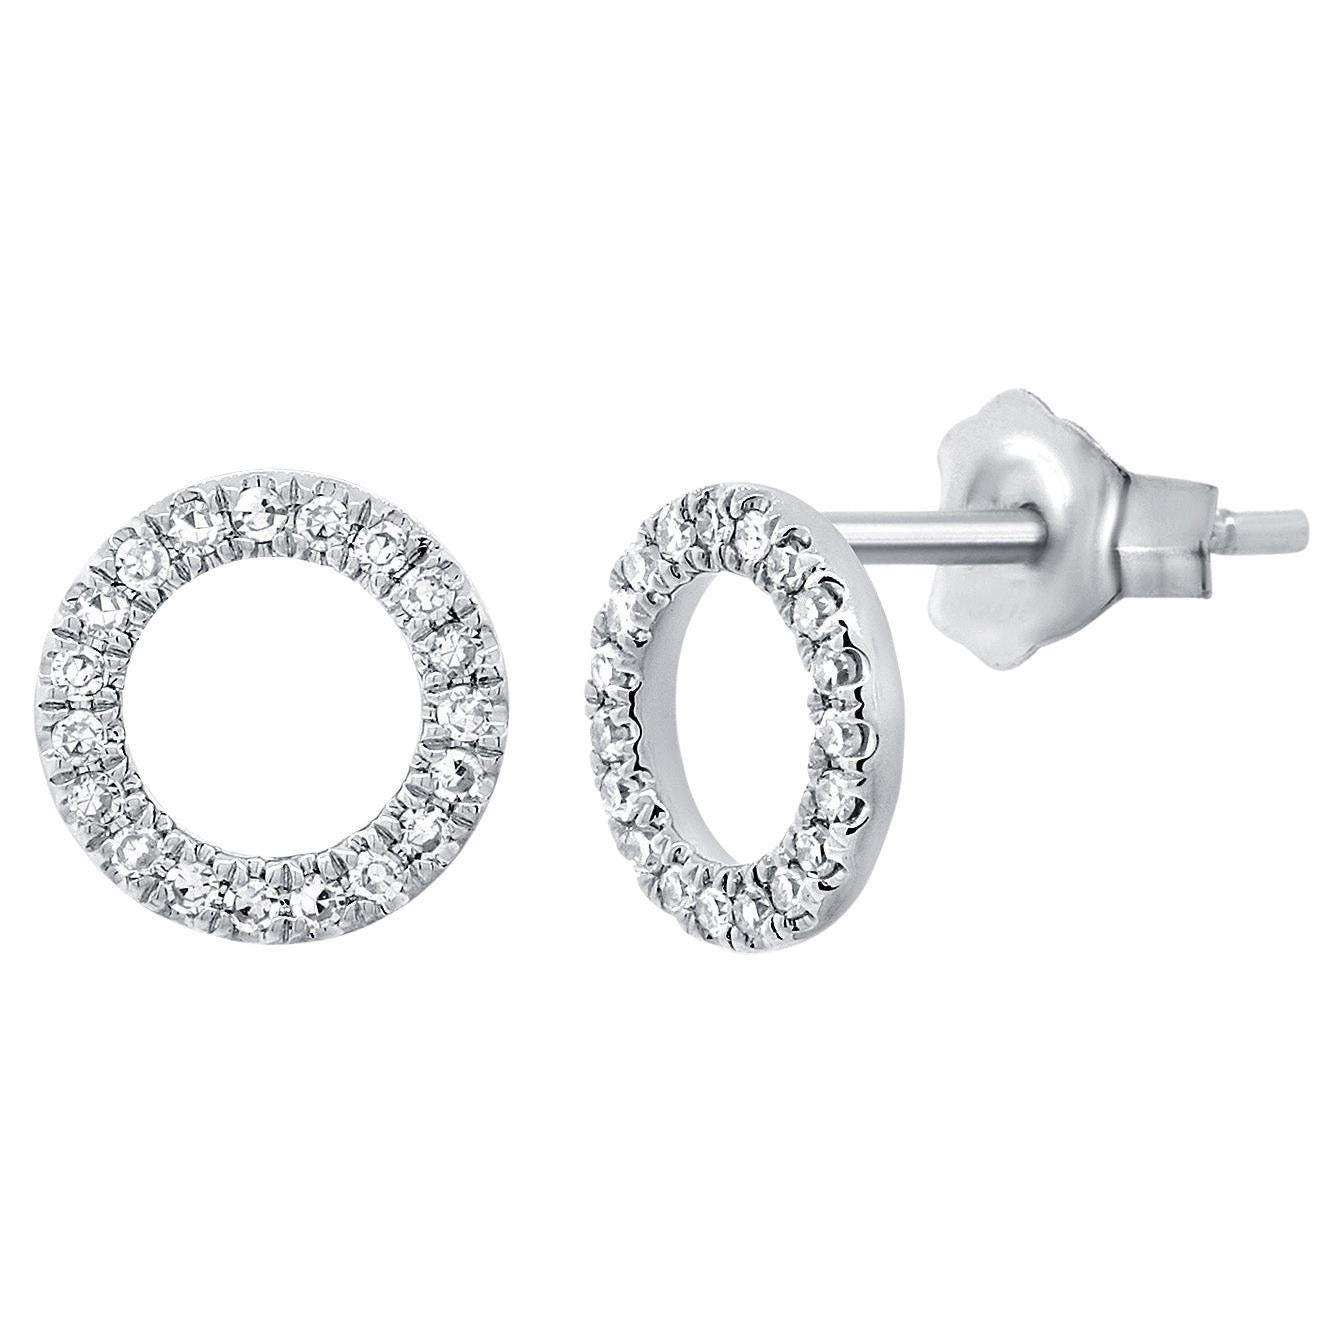 14K White Gold Open Circle Diamond Stud Earrings for Her